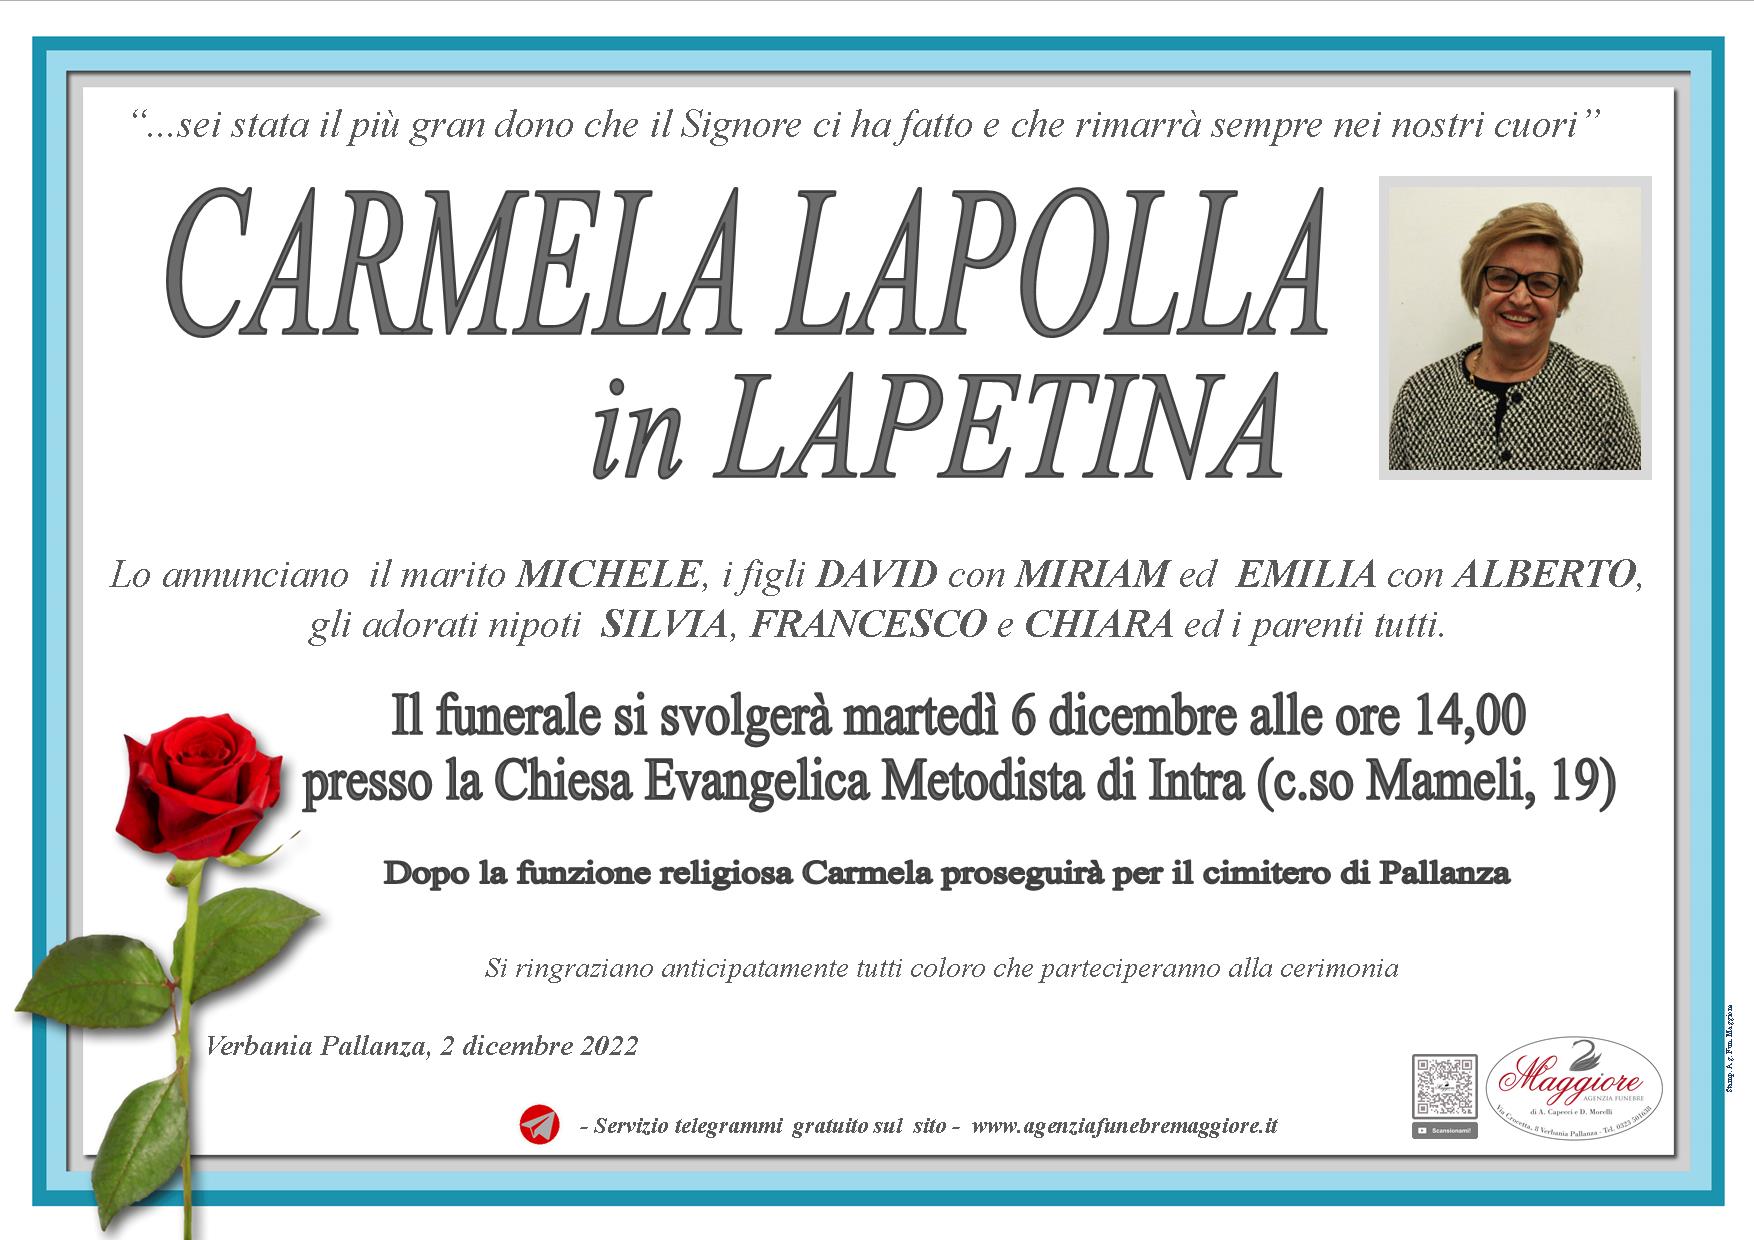 Carmela Lapolla ved. in Lapetina